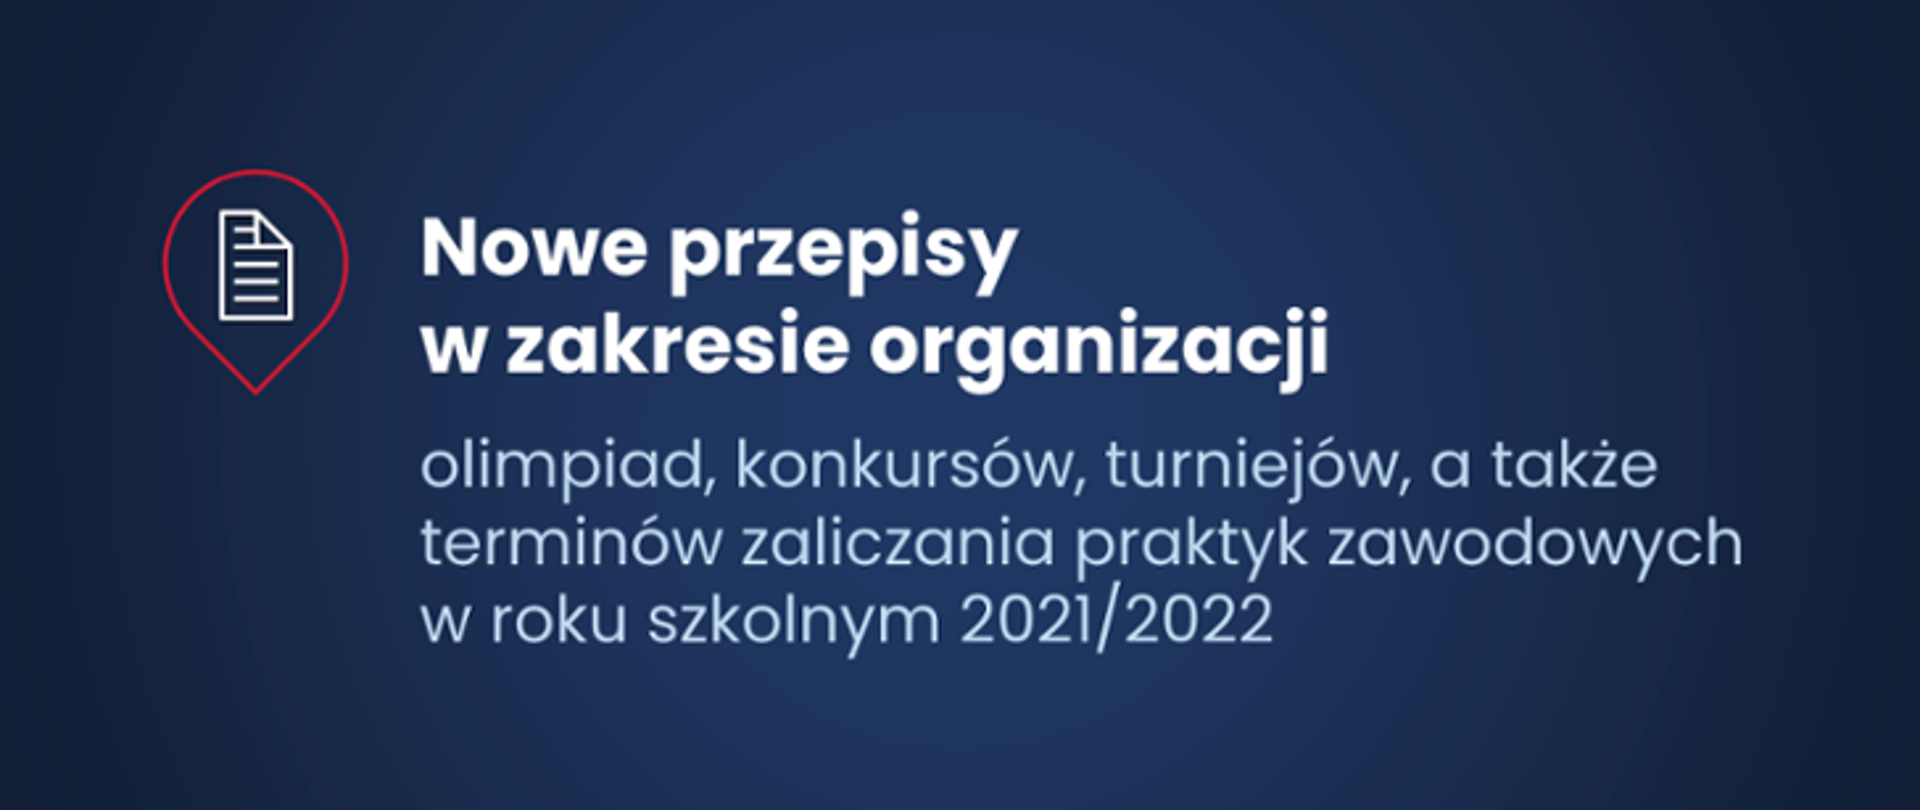 Nowe przepisy w zakresie organizacji olimpiad, konkursów, turniejów, a także terminów zaliczania praktyk zawodowych w roku szkolnym 2021/2022